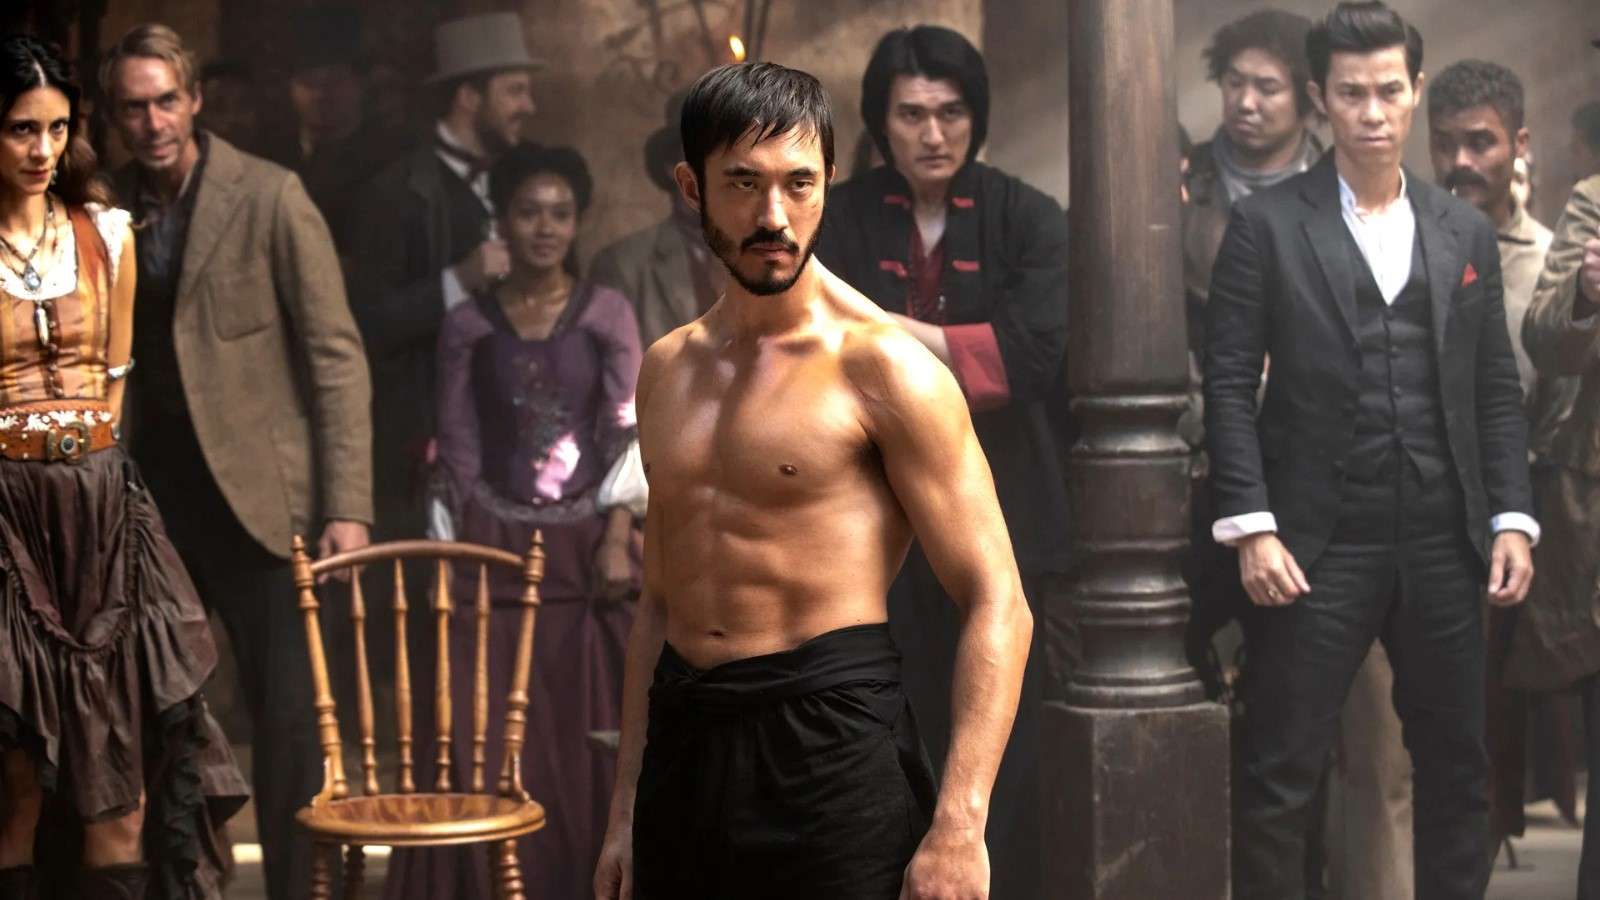 Andrew Koji as Ah Sahm in Warrior, standing in front of onlookers in a room